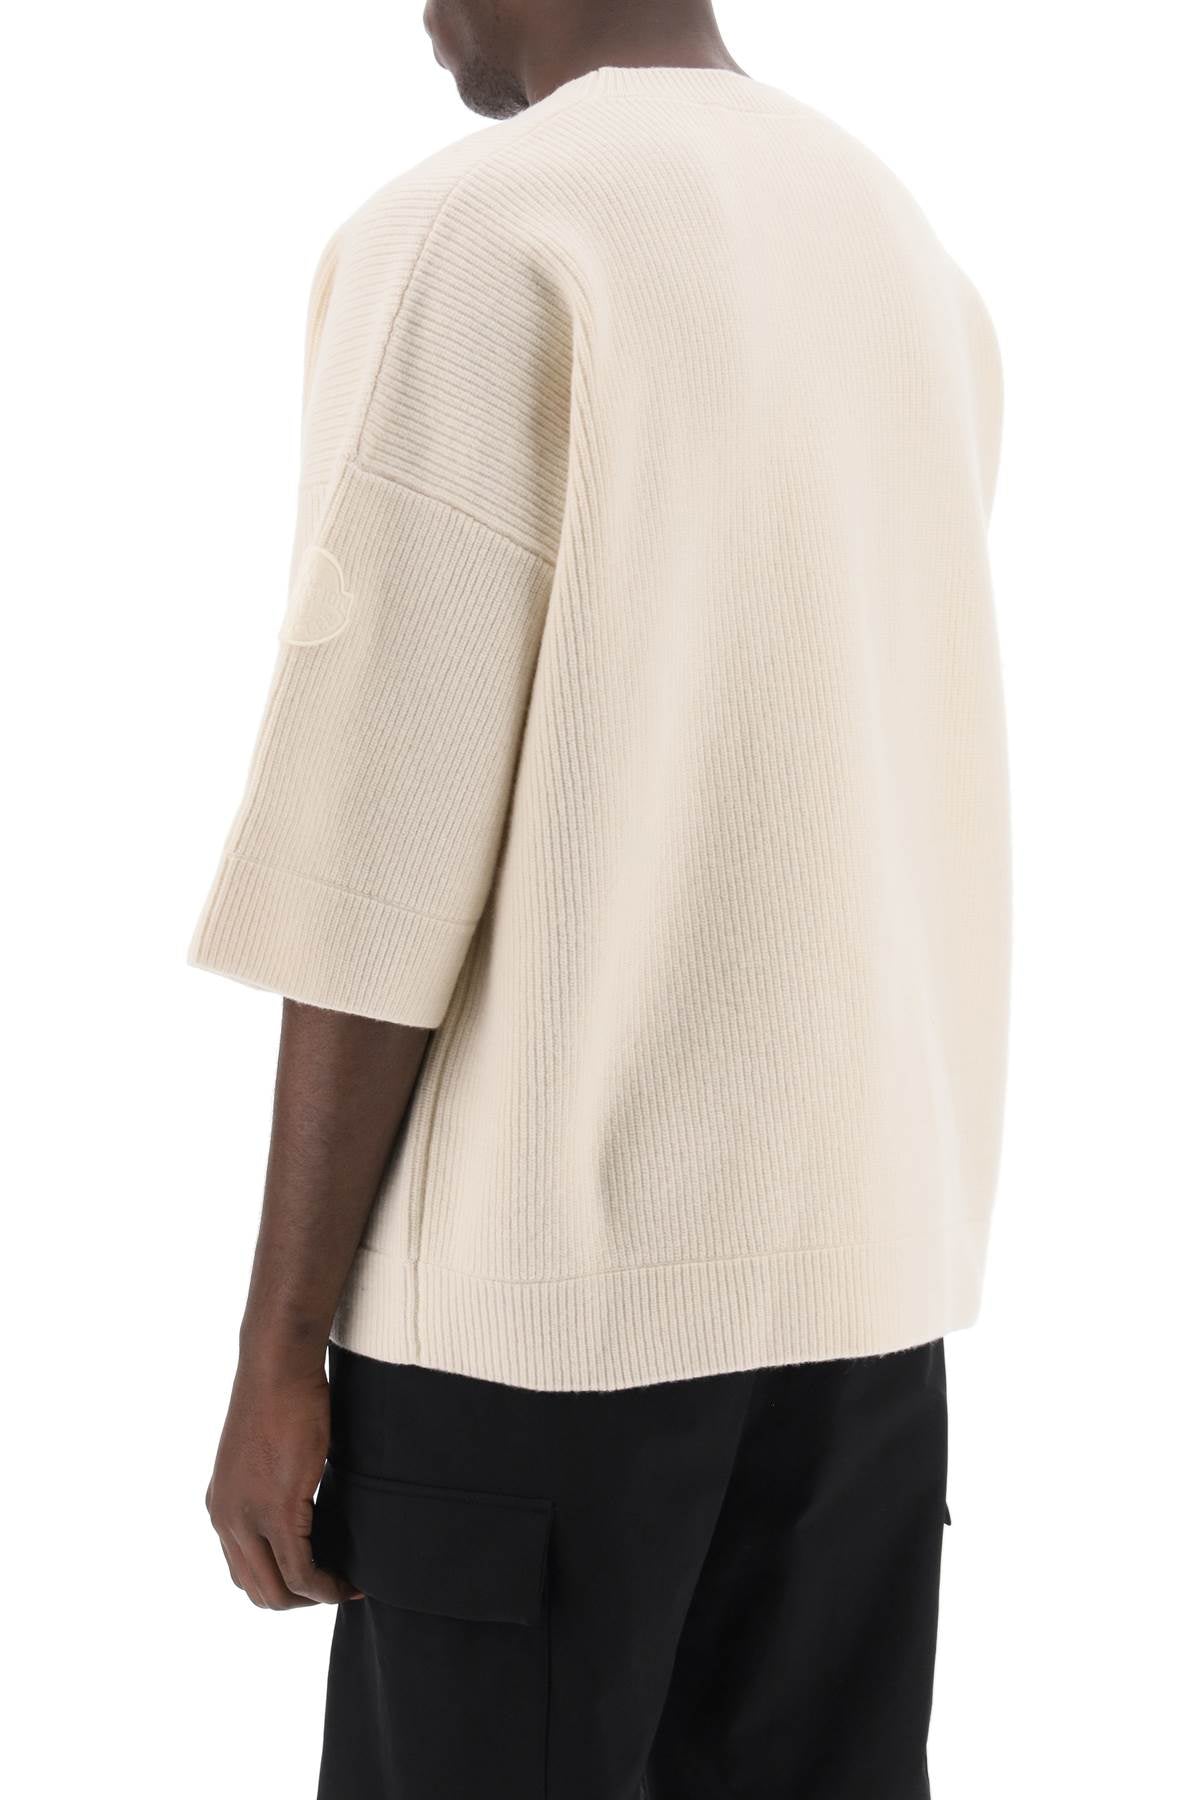 Áo chất liệu len cao cấp màu trắng nam - Cổ tròn tay ngắn, phù hợp mùa Thu Đông 23